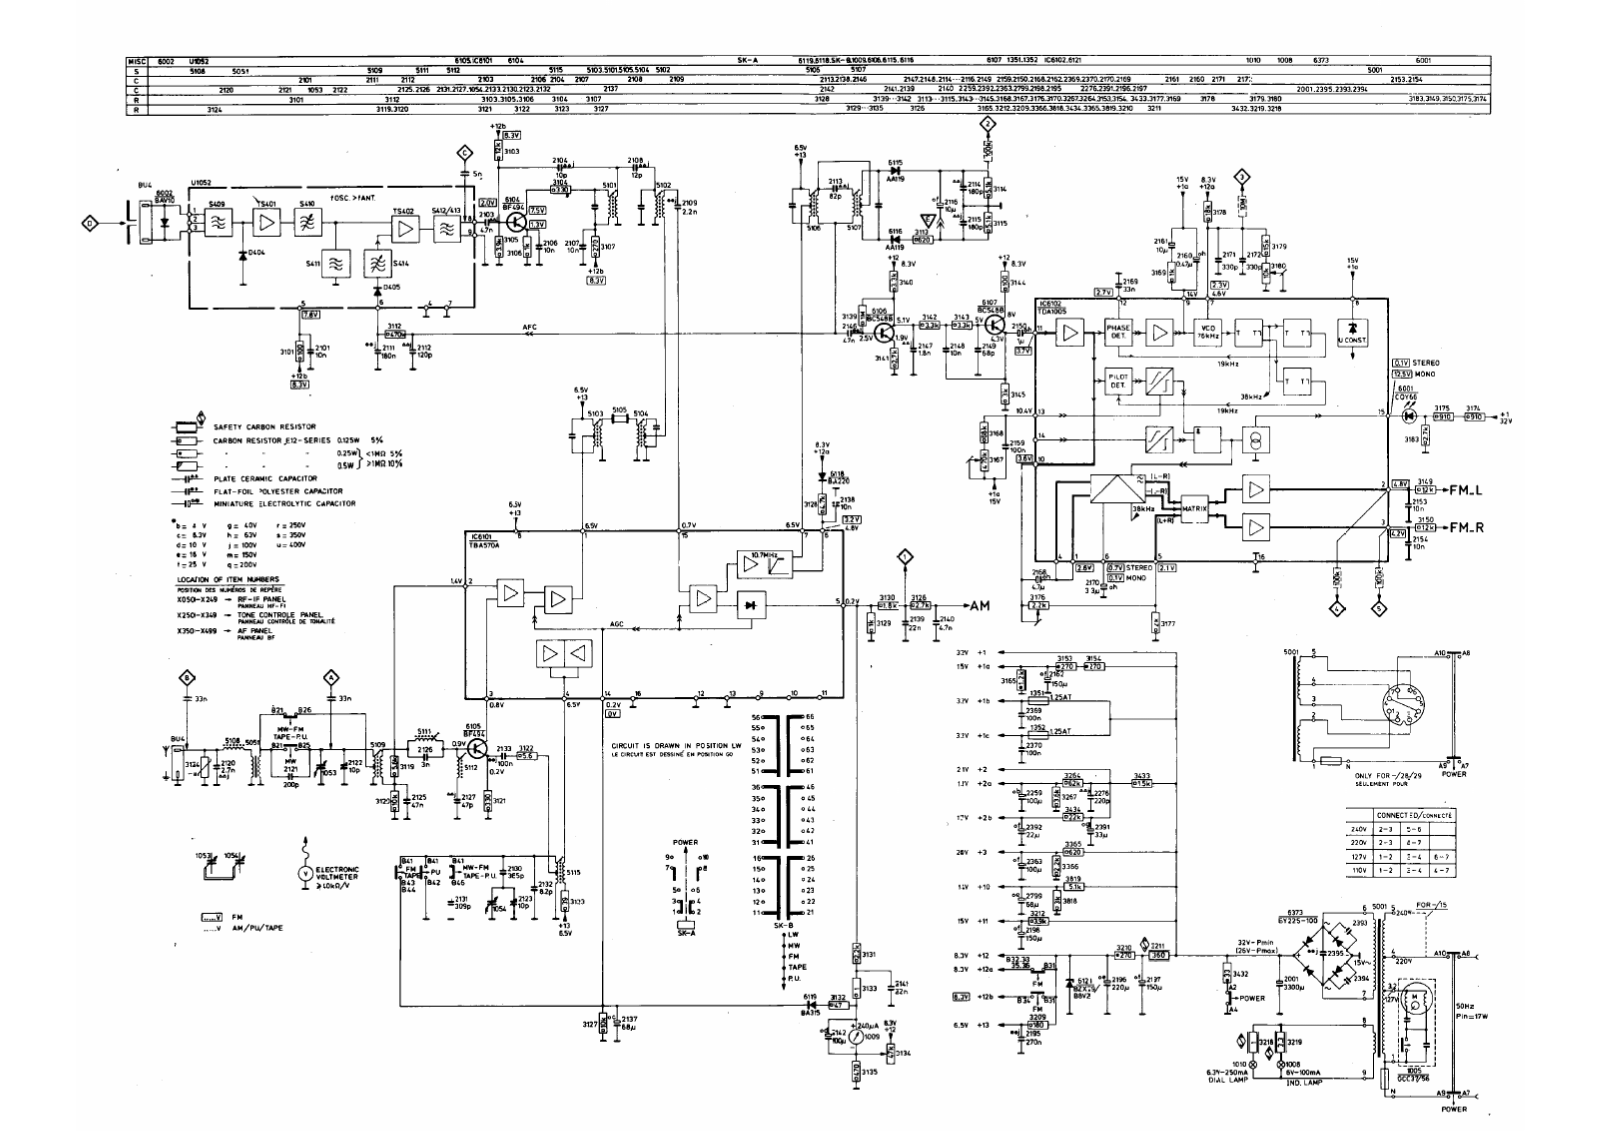 Philips tap22ah876 schematic